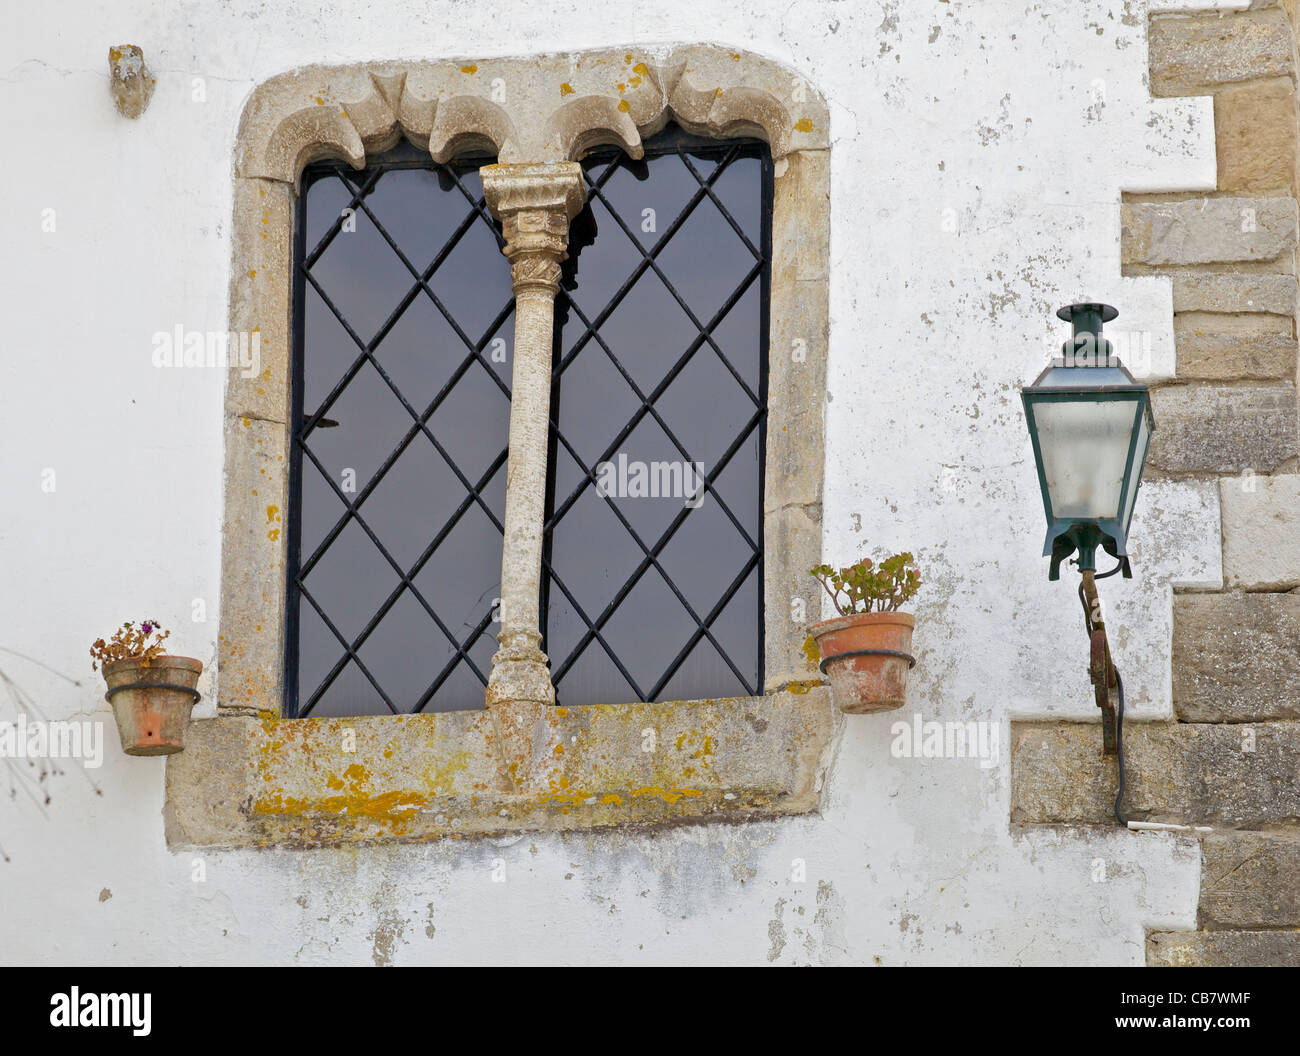 Fenêtre en pierre ouvragée détaillées à côté d'une lanterne de rue dans le village médiéval d'Obidos Banque D'Images